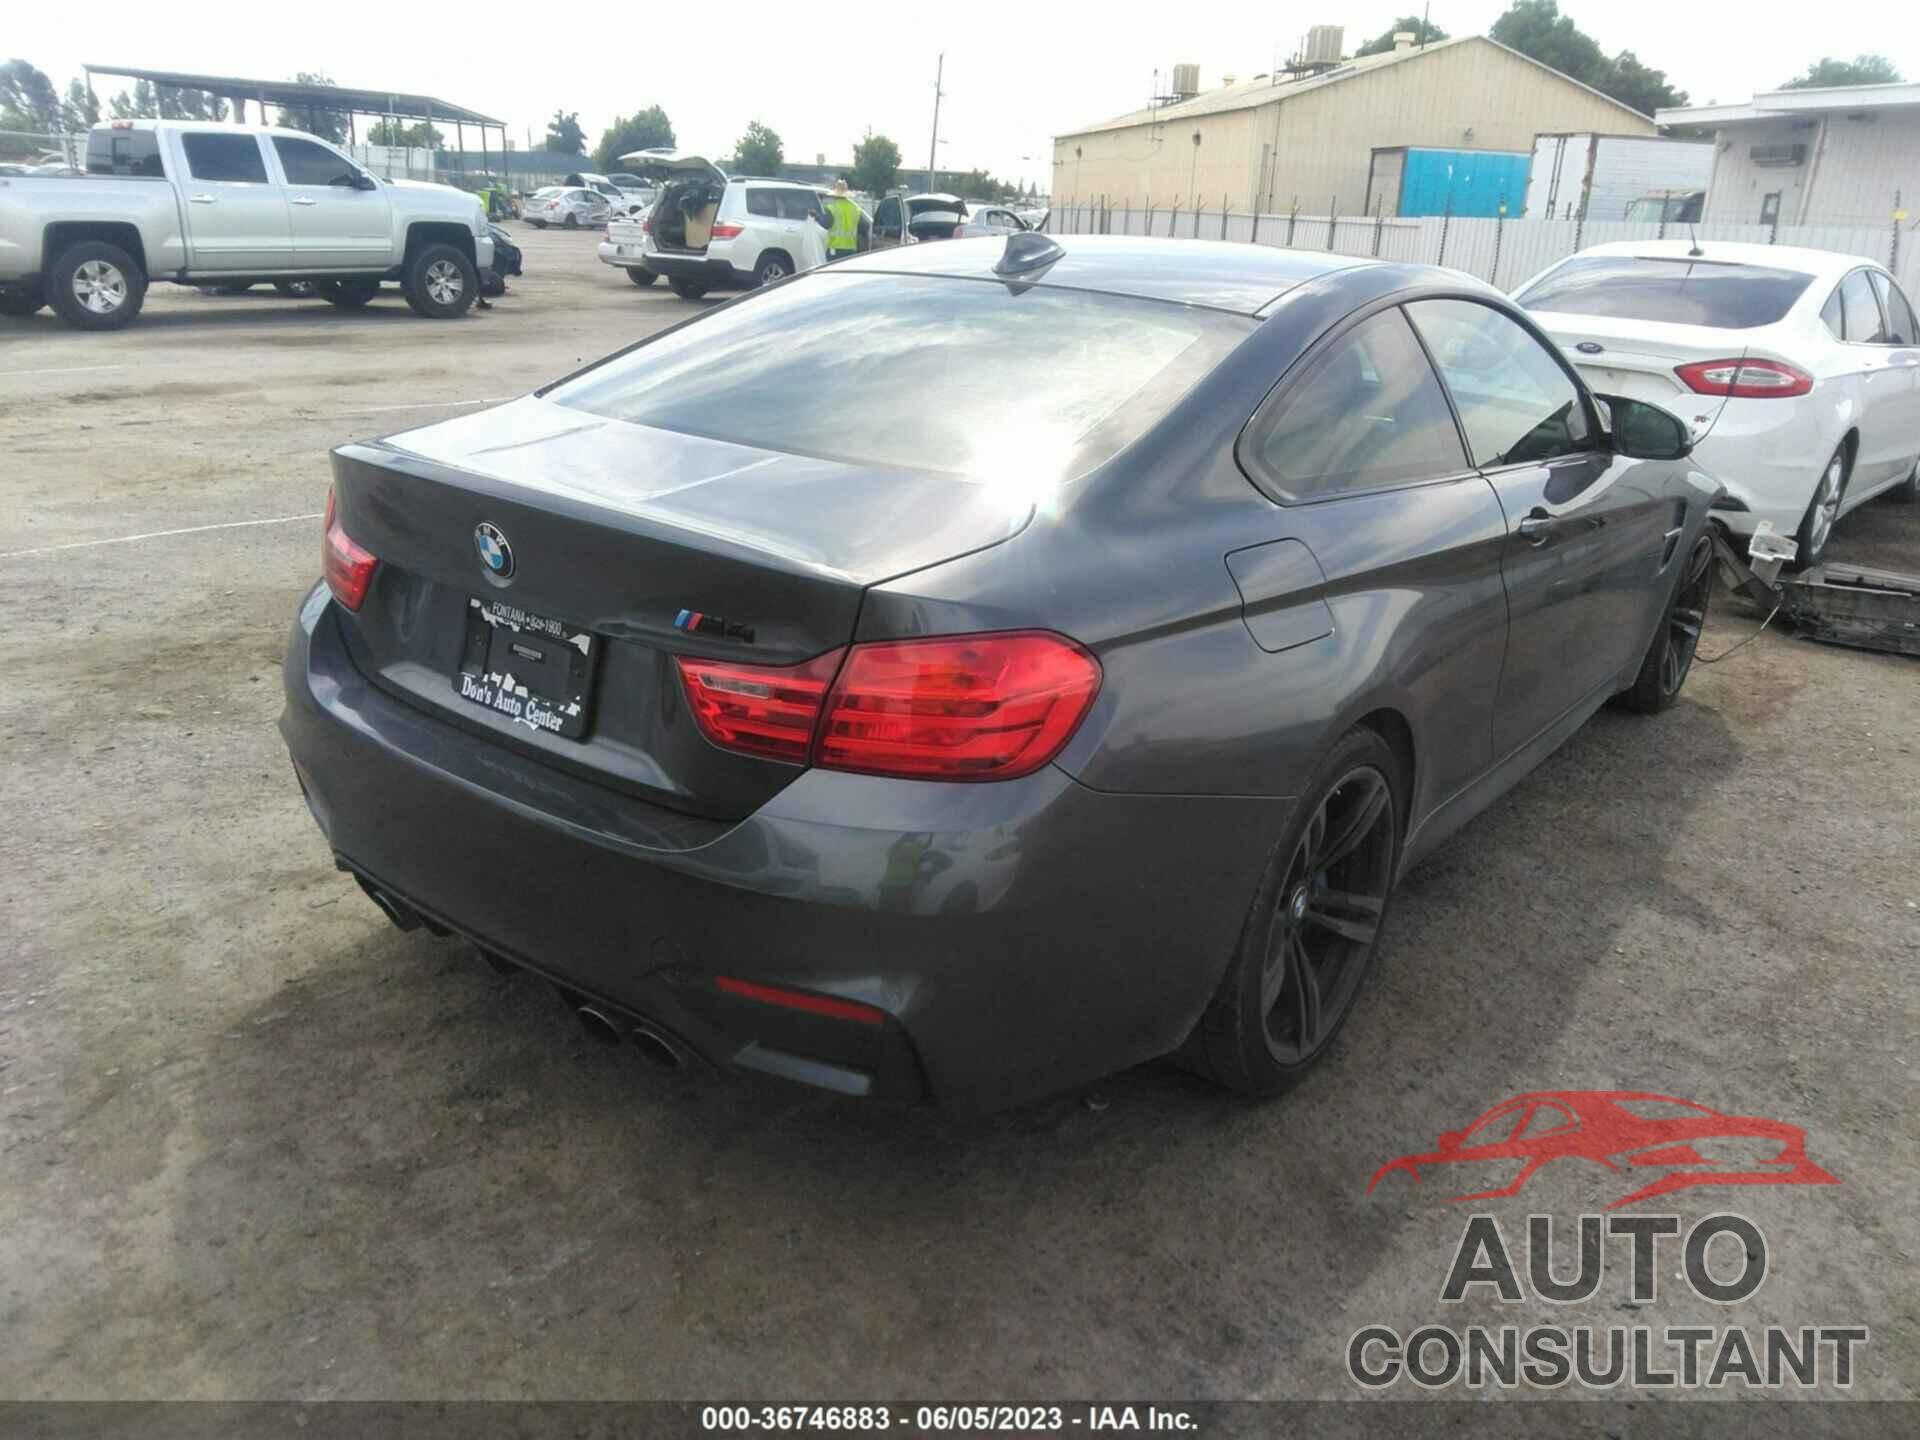 BMW M4 2015 - WBS3R9C55FK334805